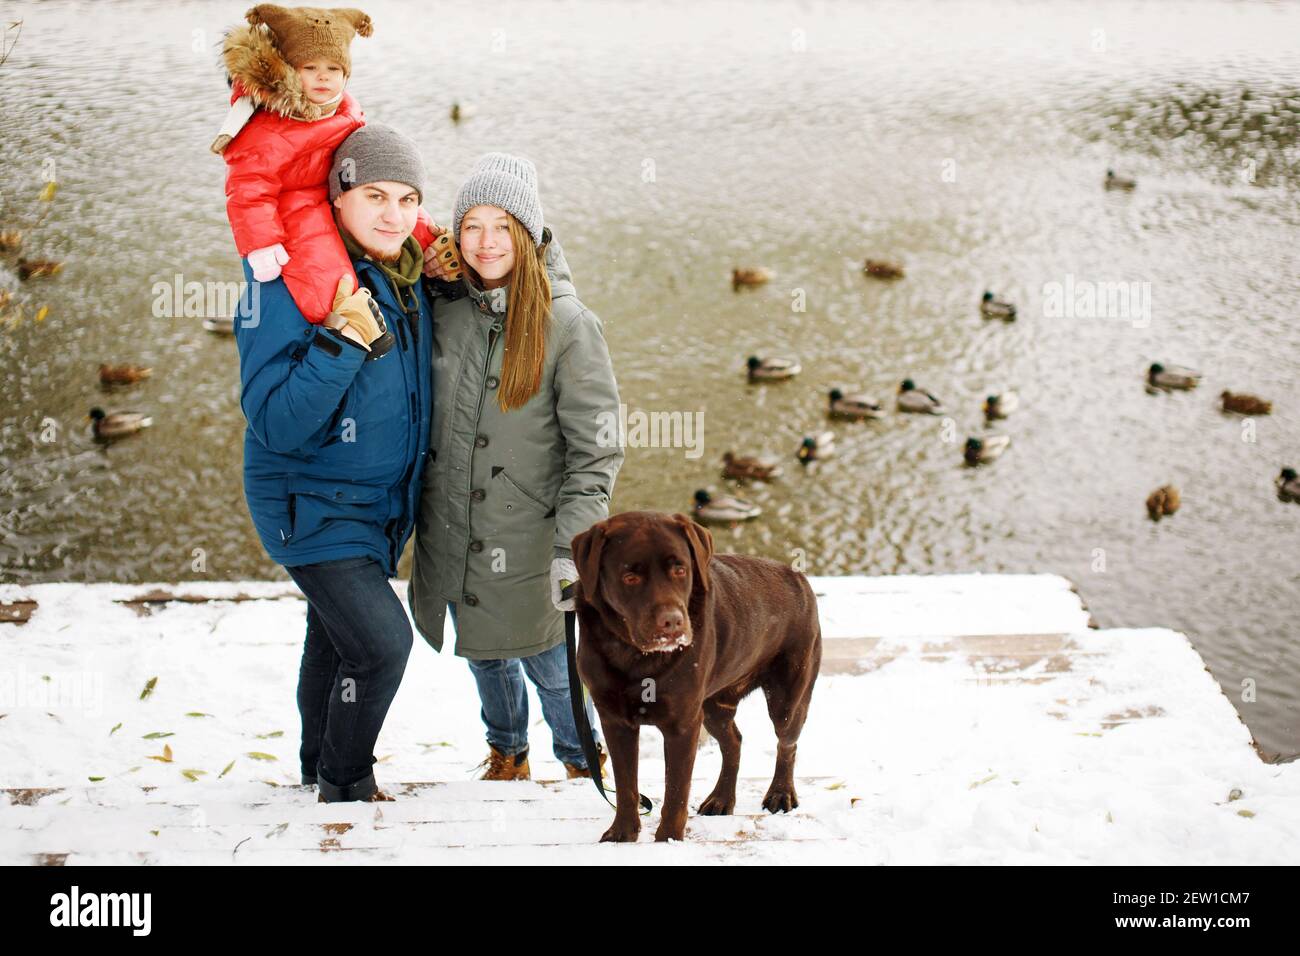 In voller Höhe Familienportrait mit einem Kind und Hund im Winter Casual  Outfit posiert im Freien in der Nähe des Flusses mit Entenvögeln,  Wochenende Aktivitäten und frische Luft Stockfotografie - Alamy